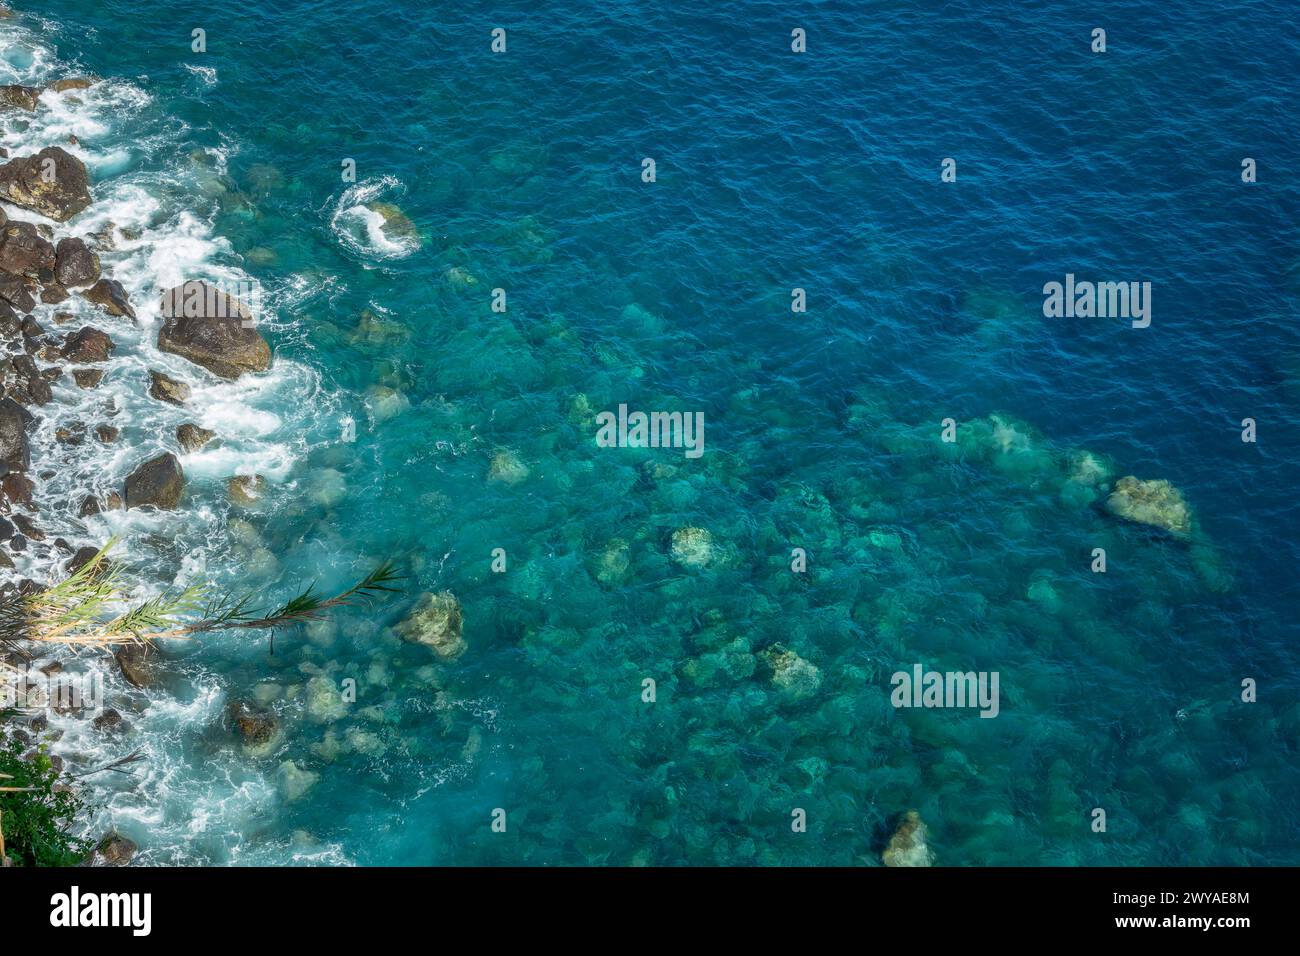 Drone vue sur les rochers et la mer bleue vierge avec de l'eau transparente claire. Fond d'océan avec espace de copie Banque D'Images